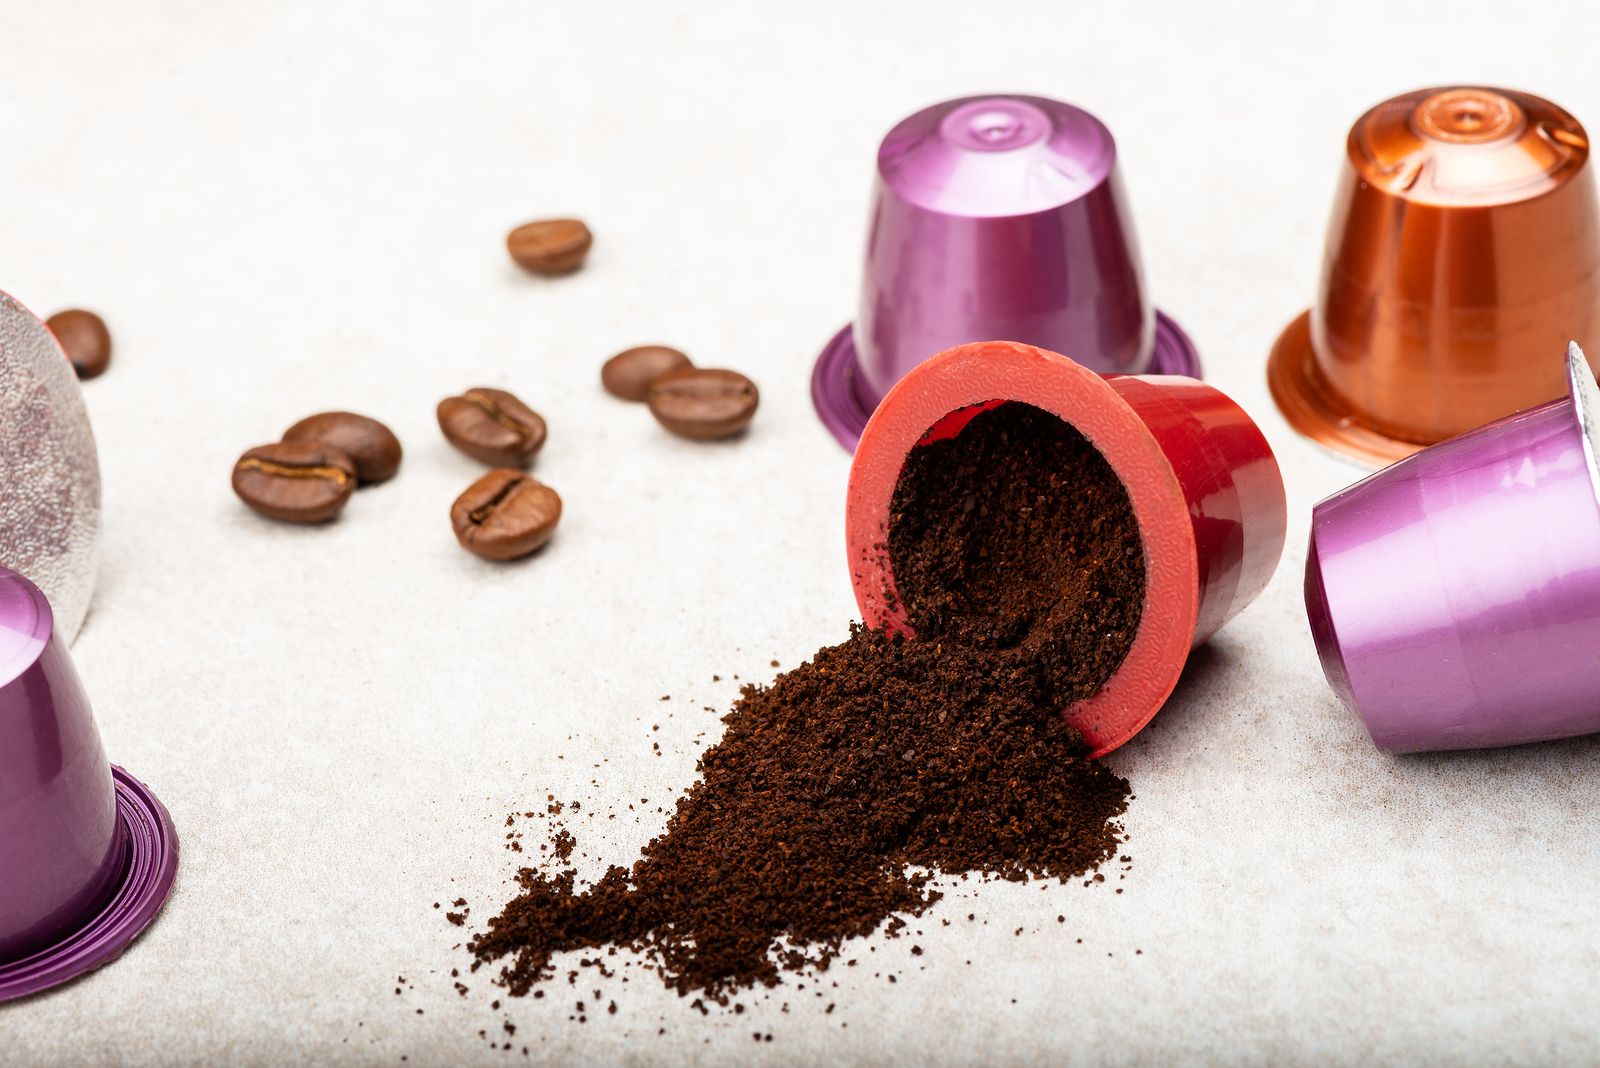 Esta es la lista con las 5 mejores marcas de cápsulas de café, a juicio de la OCU